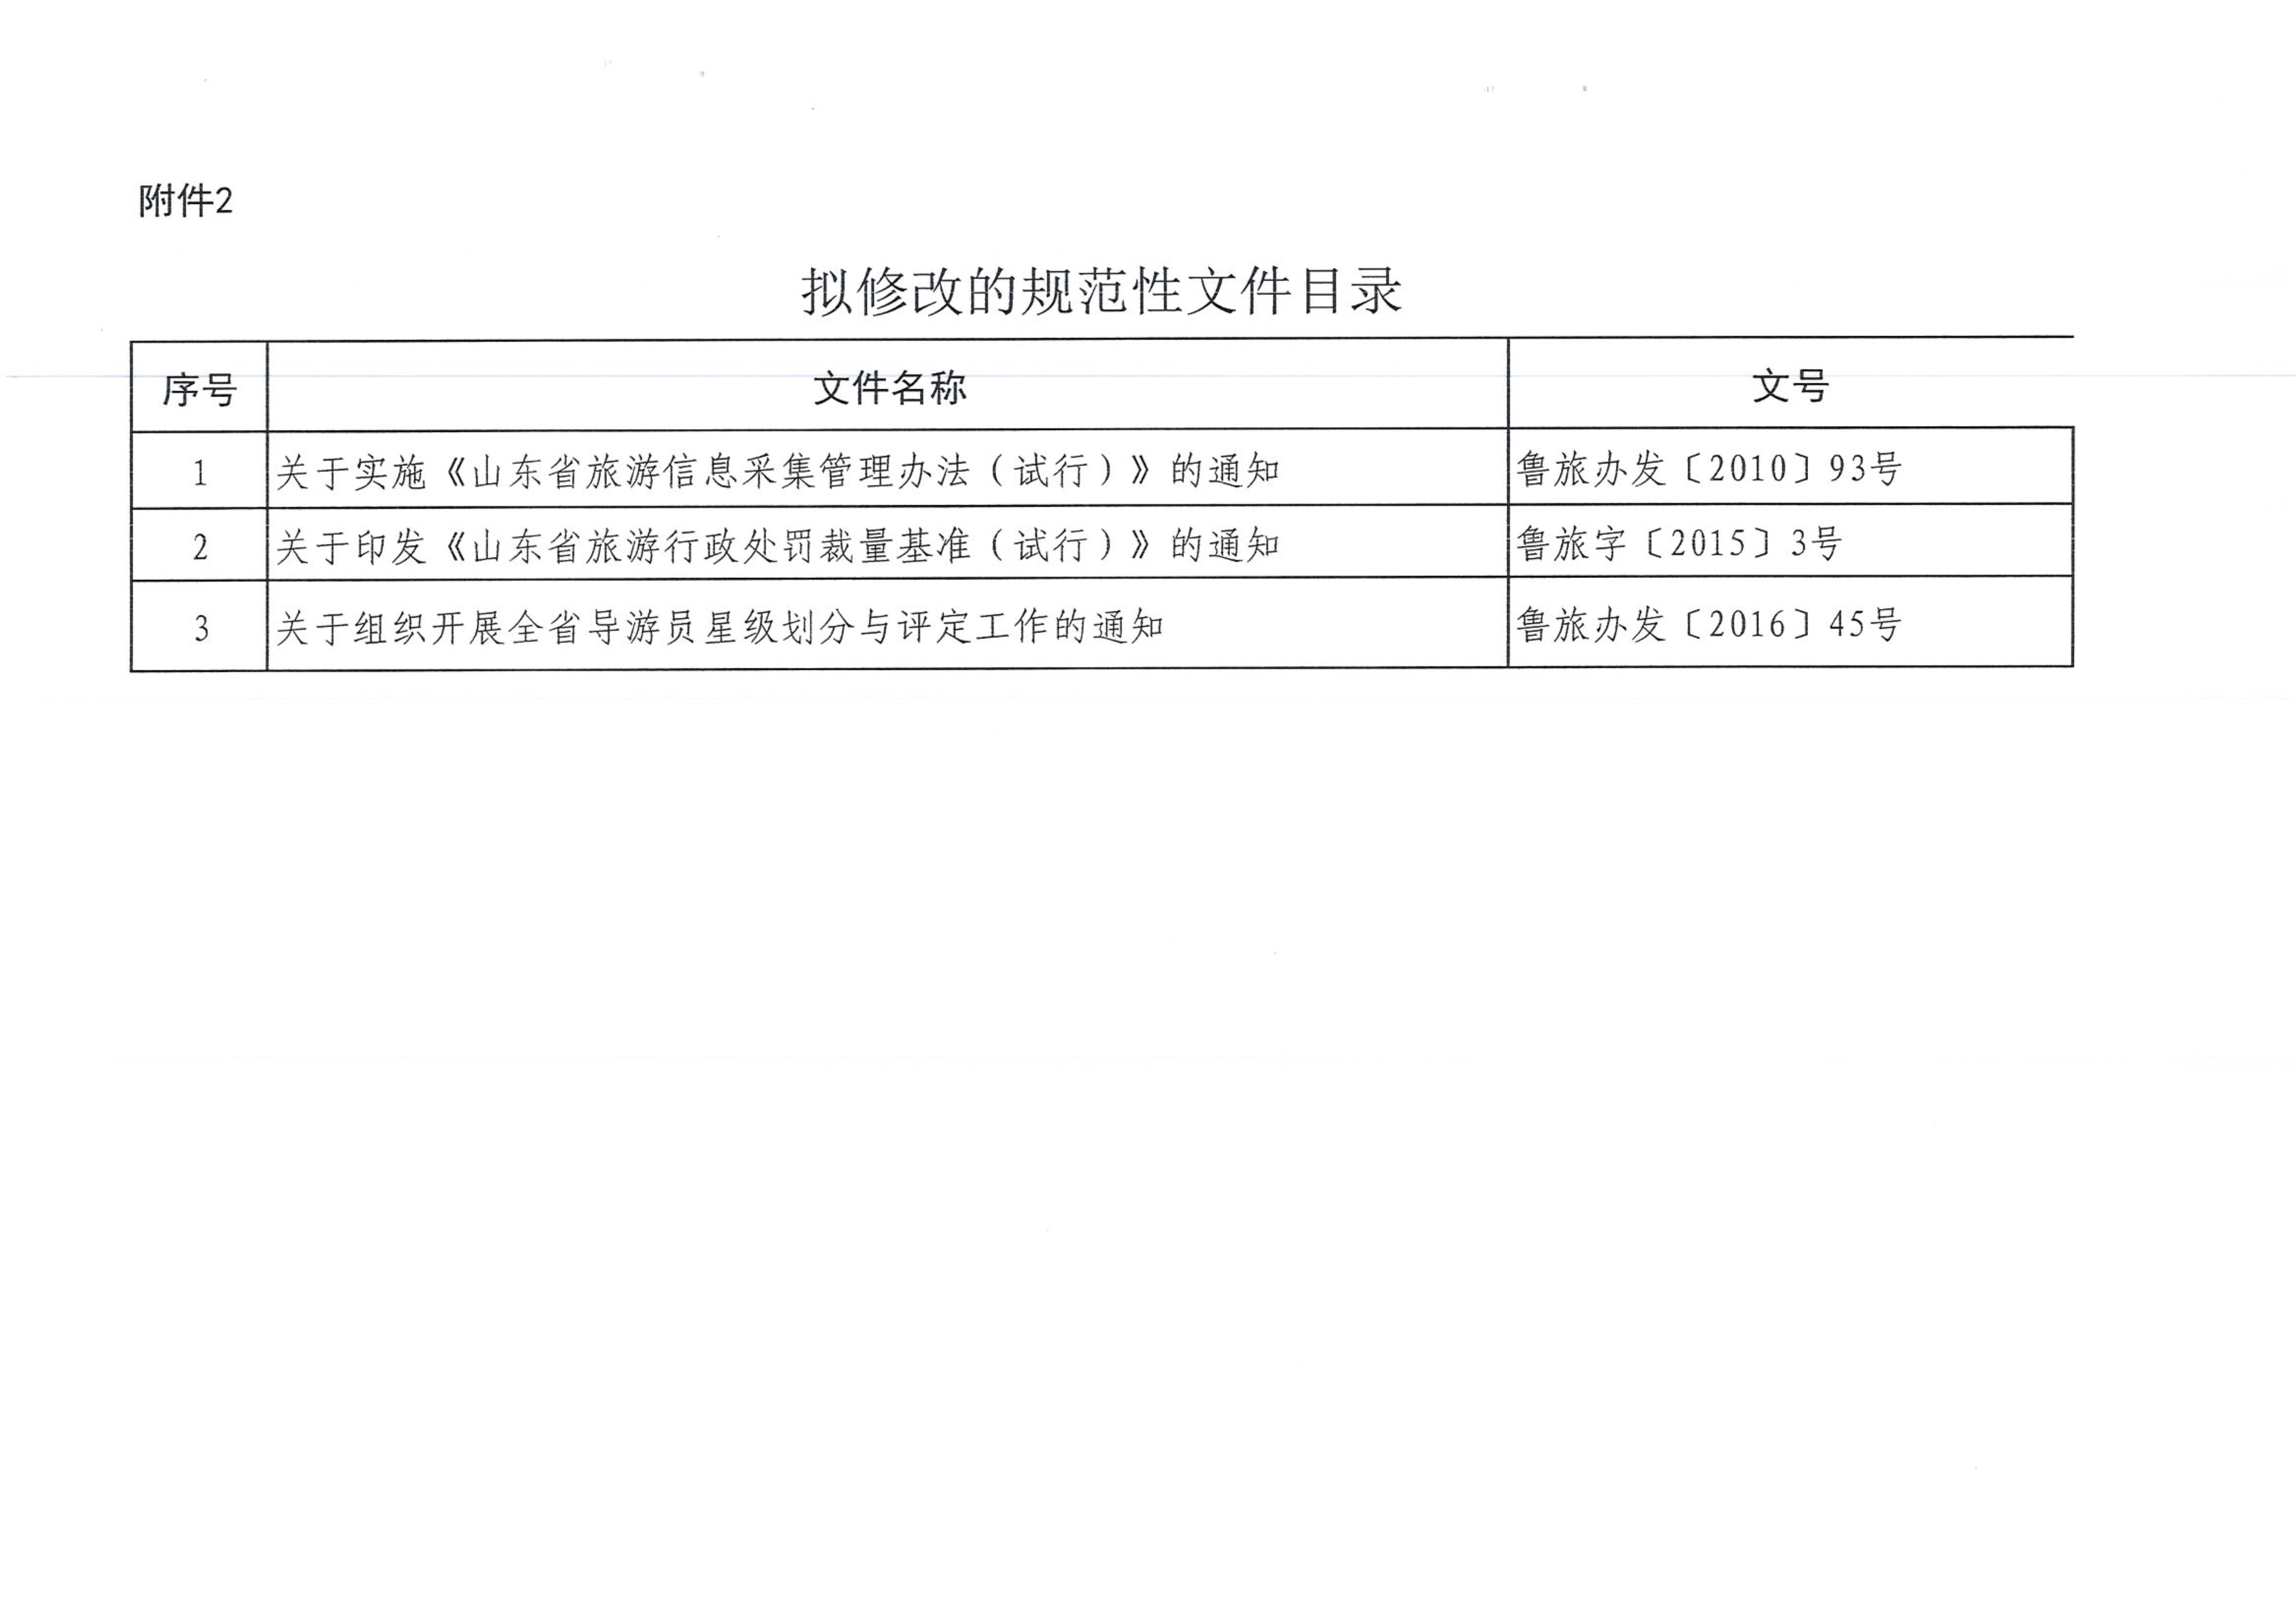 070310063236_0山东省旅游发展委员会关于公布规范性文件清理结果的通知鲁旅字201854号_4.jpg